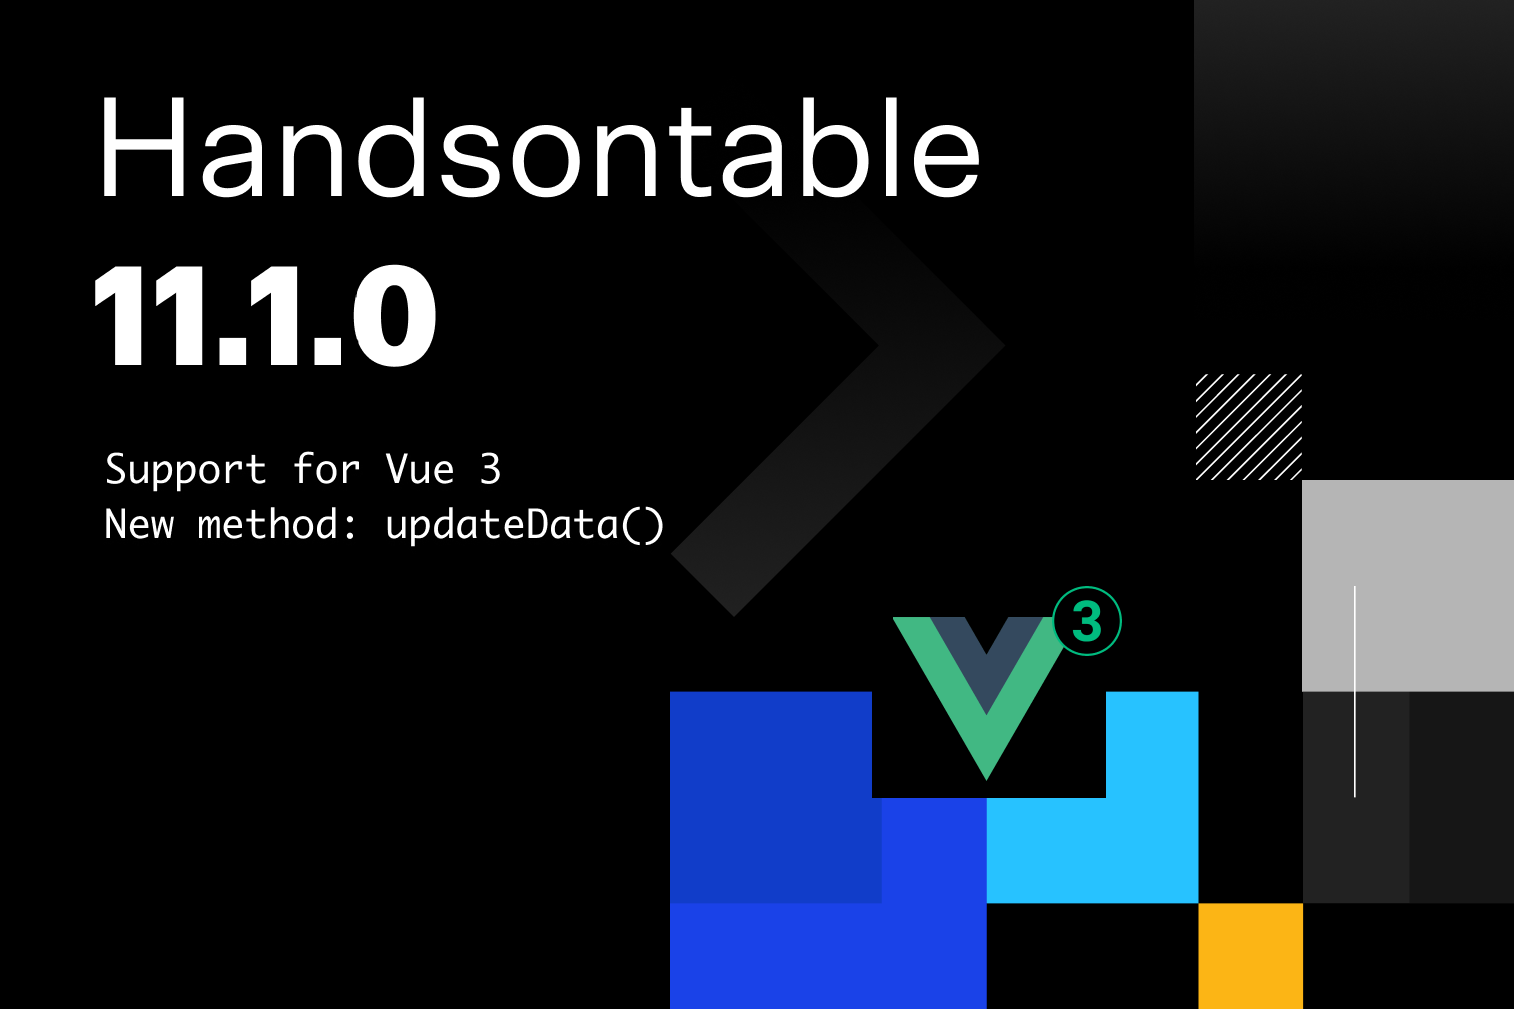 Handsontable 11.1.0: Vue 3 support and updateData()